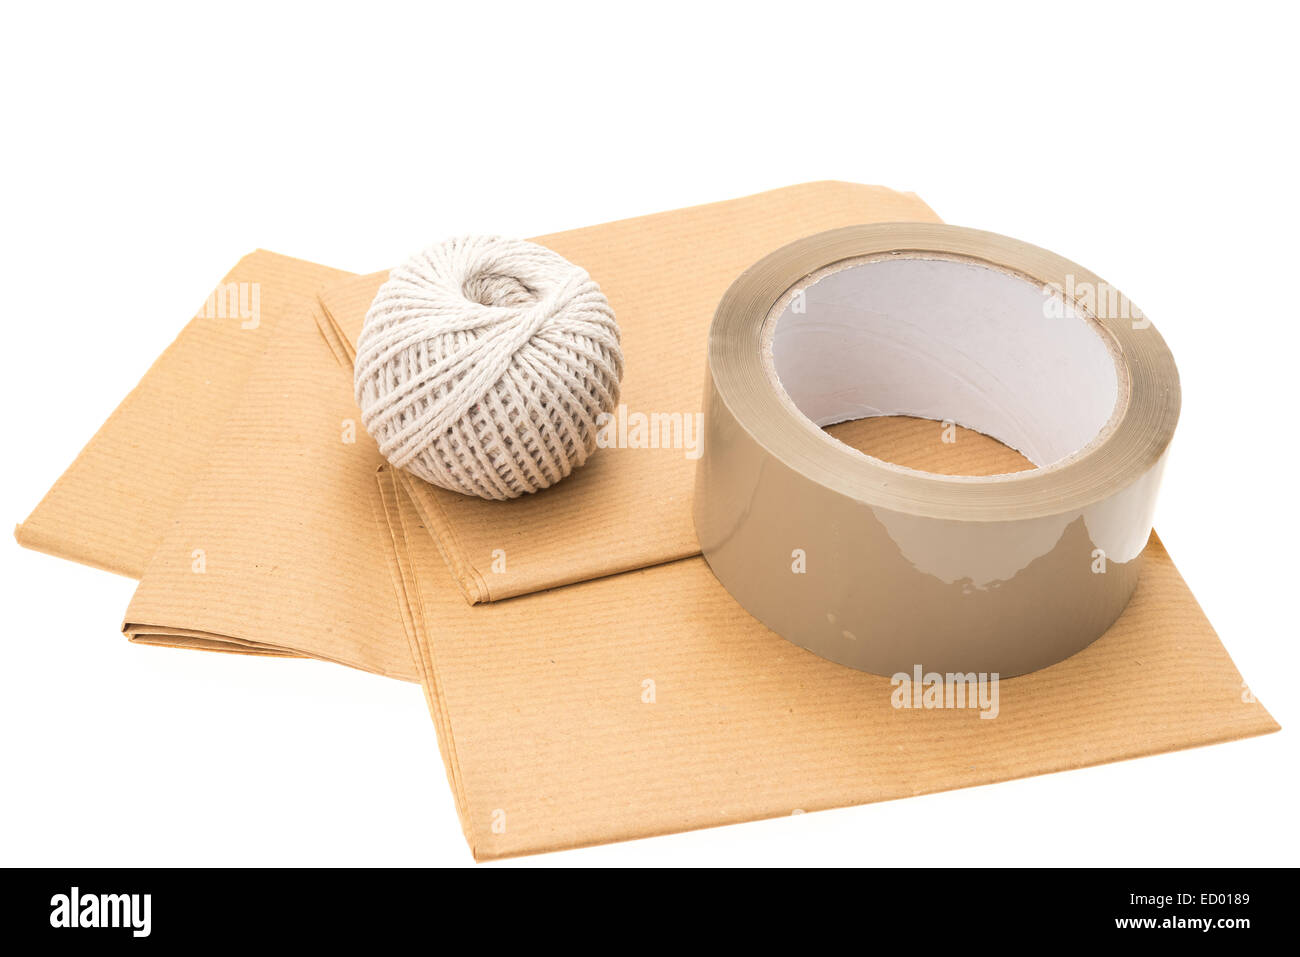 Tre elementi essenziali per la riuscita di una confezione - carta di avvolgimento, stringa e forte parcel tape - sfondo bianco Foto Stock